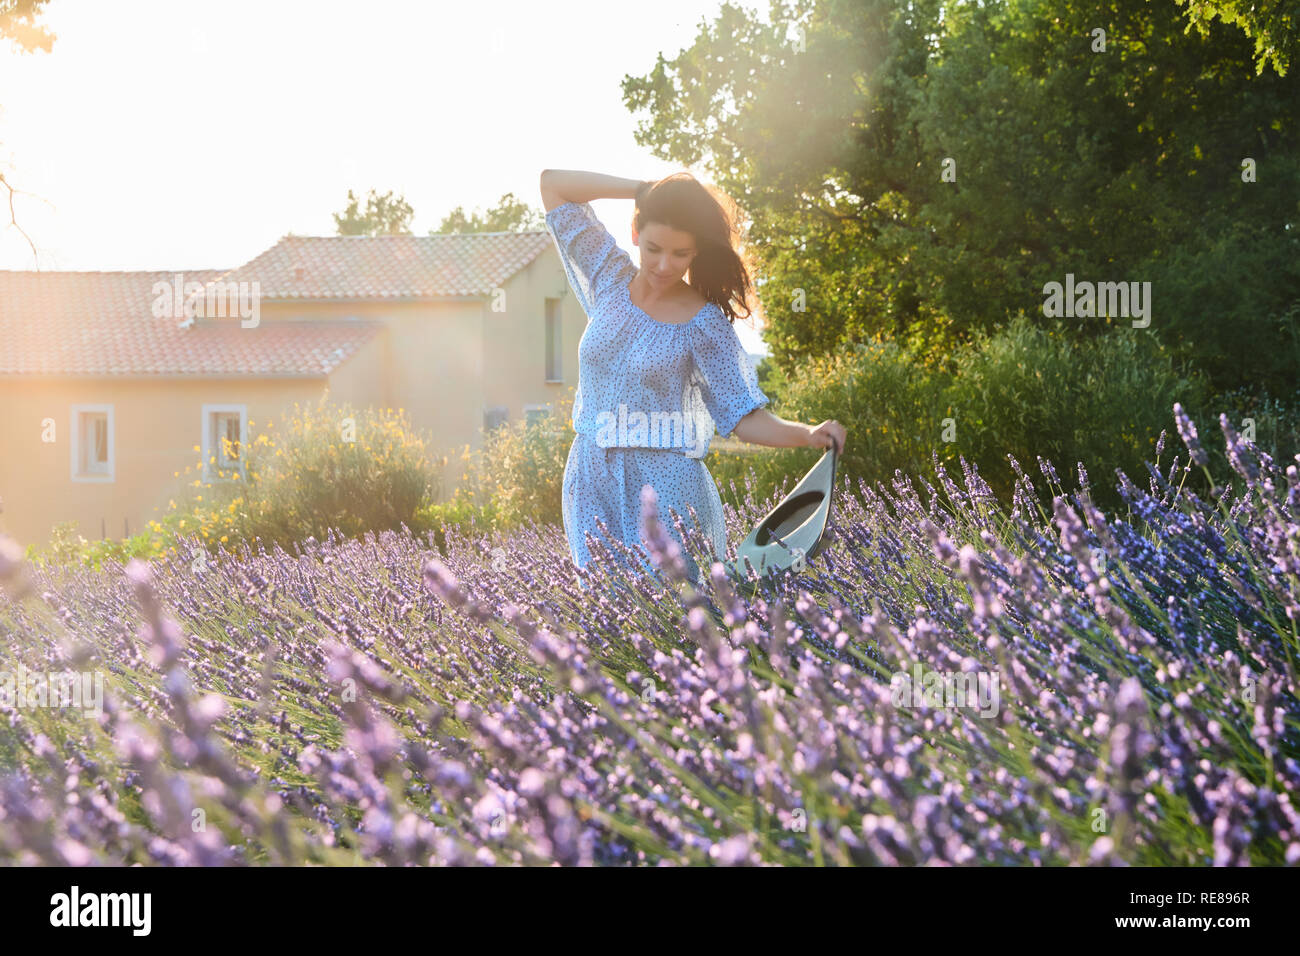 La belle jeune fille dans une robe bleue marche à travers le champ de lavande, un long cheveux bouclés, sourire, plaisir, arbres en arrière-plan Banque D'Images